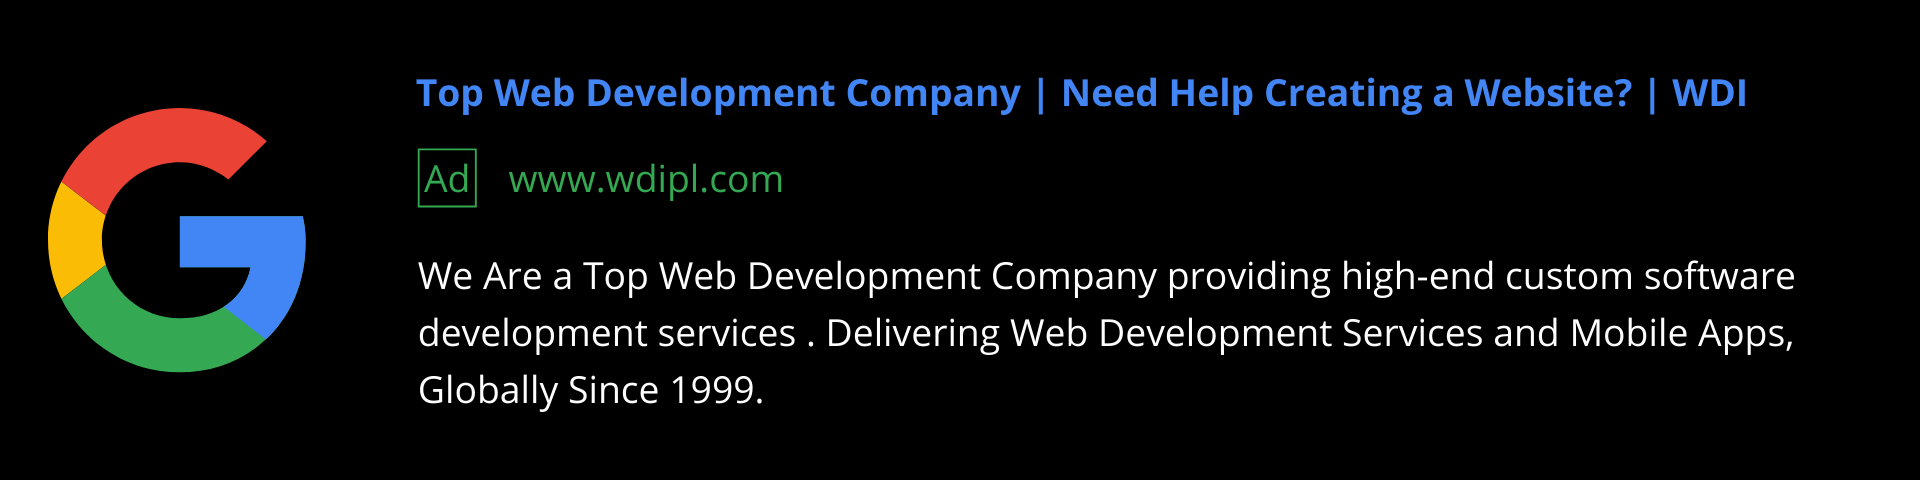 Top Web Development Company - WDI